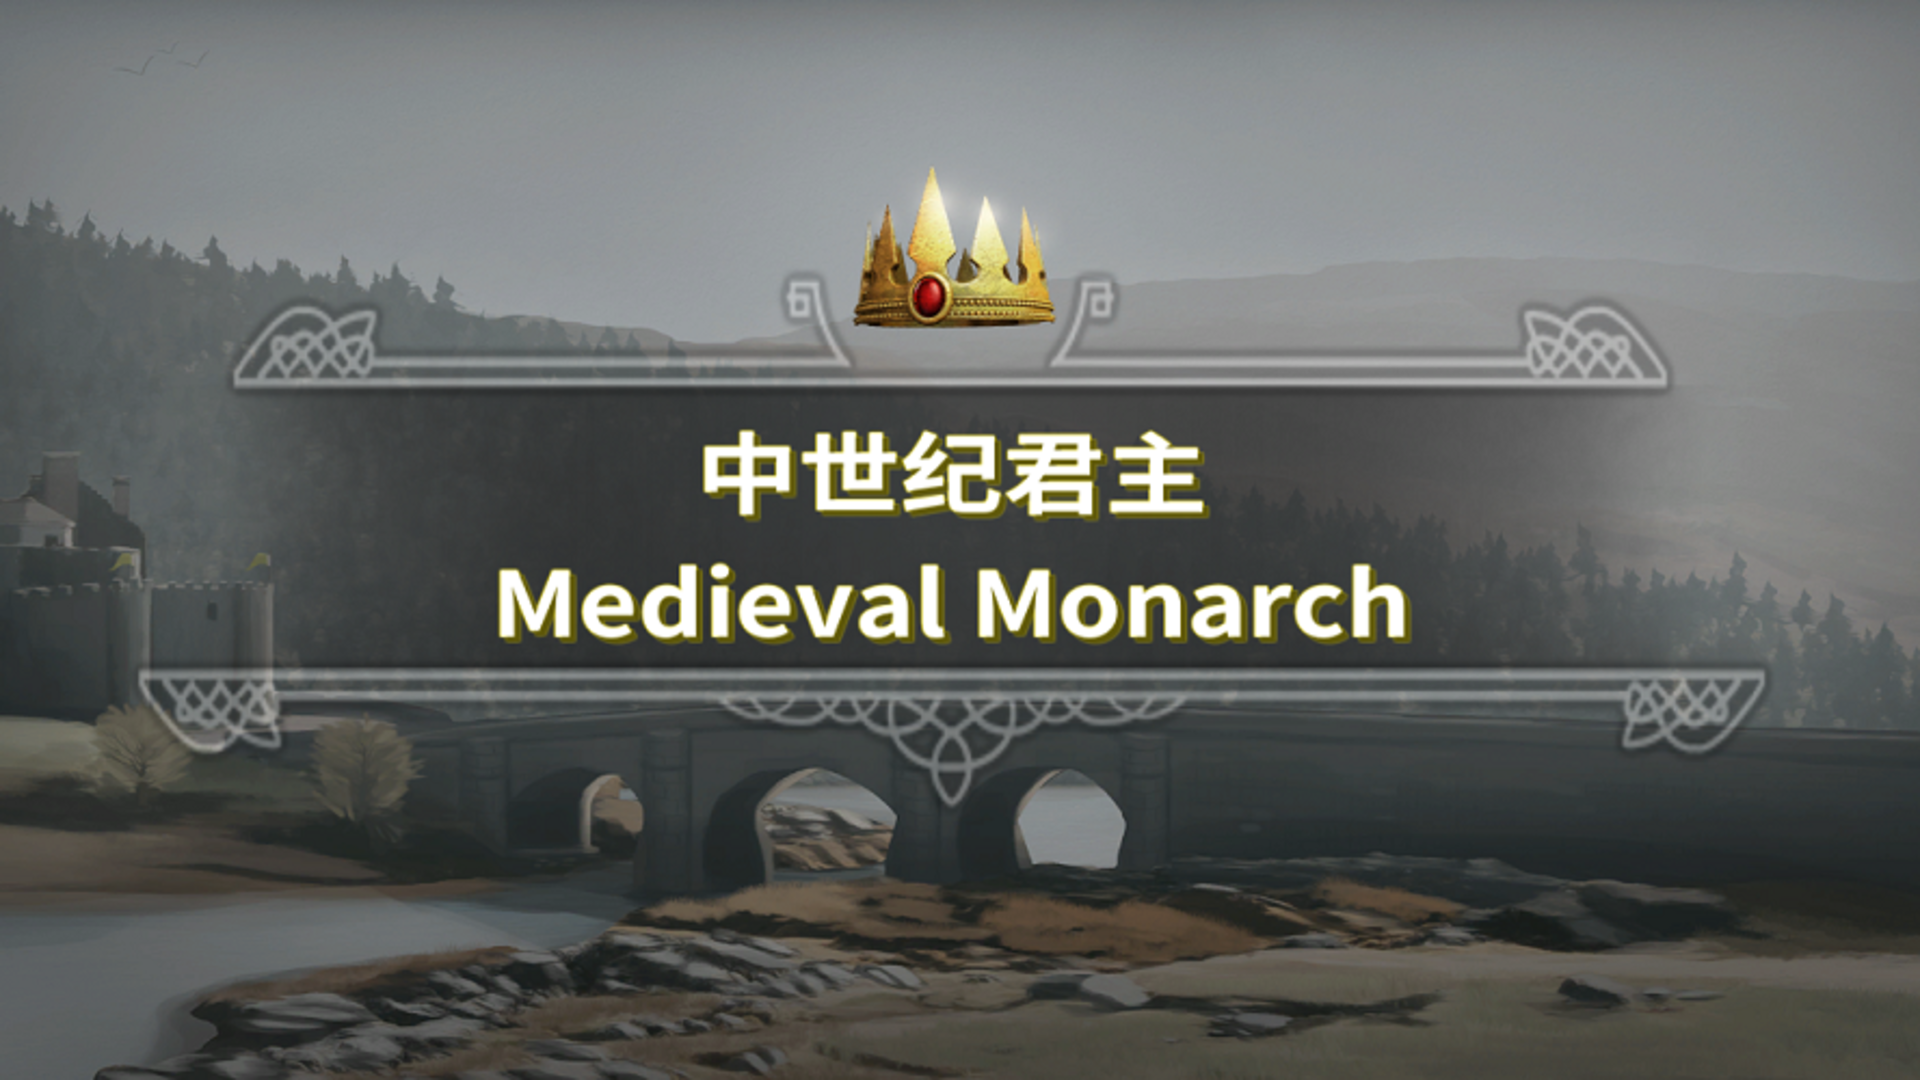 Banner of mittelalterlicher Monarch 